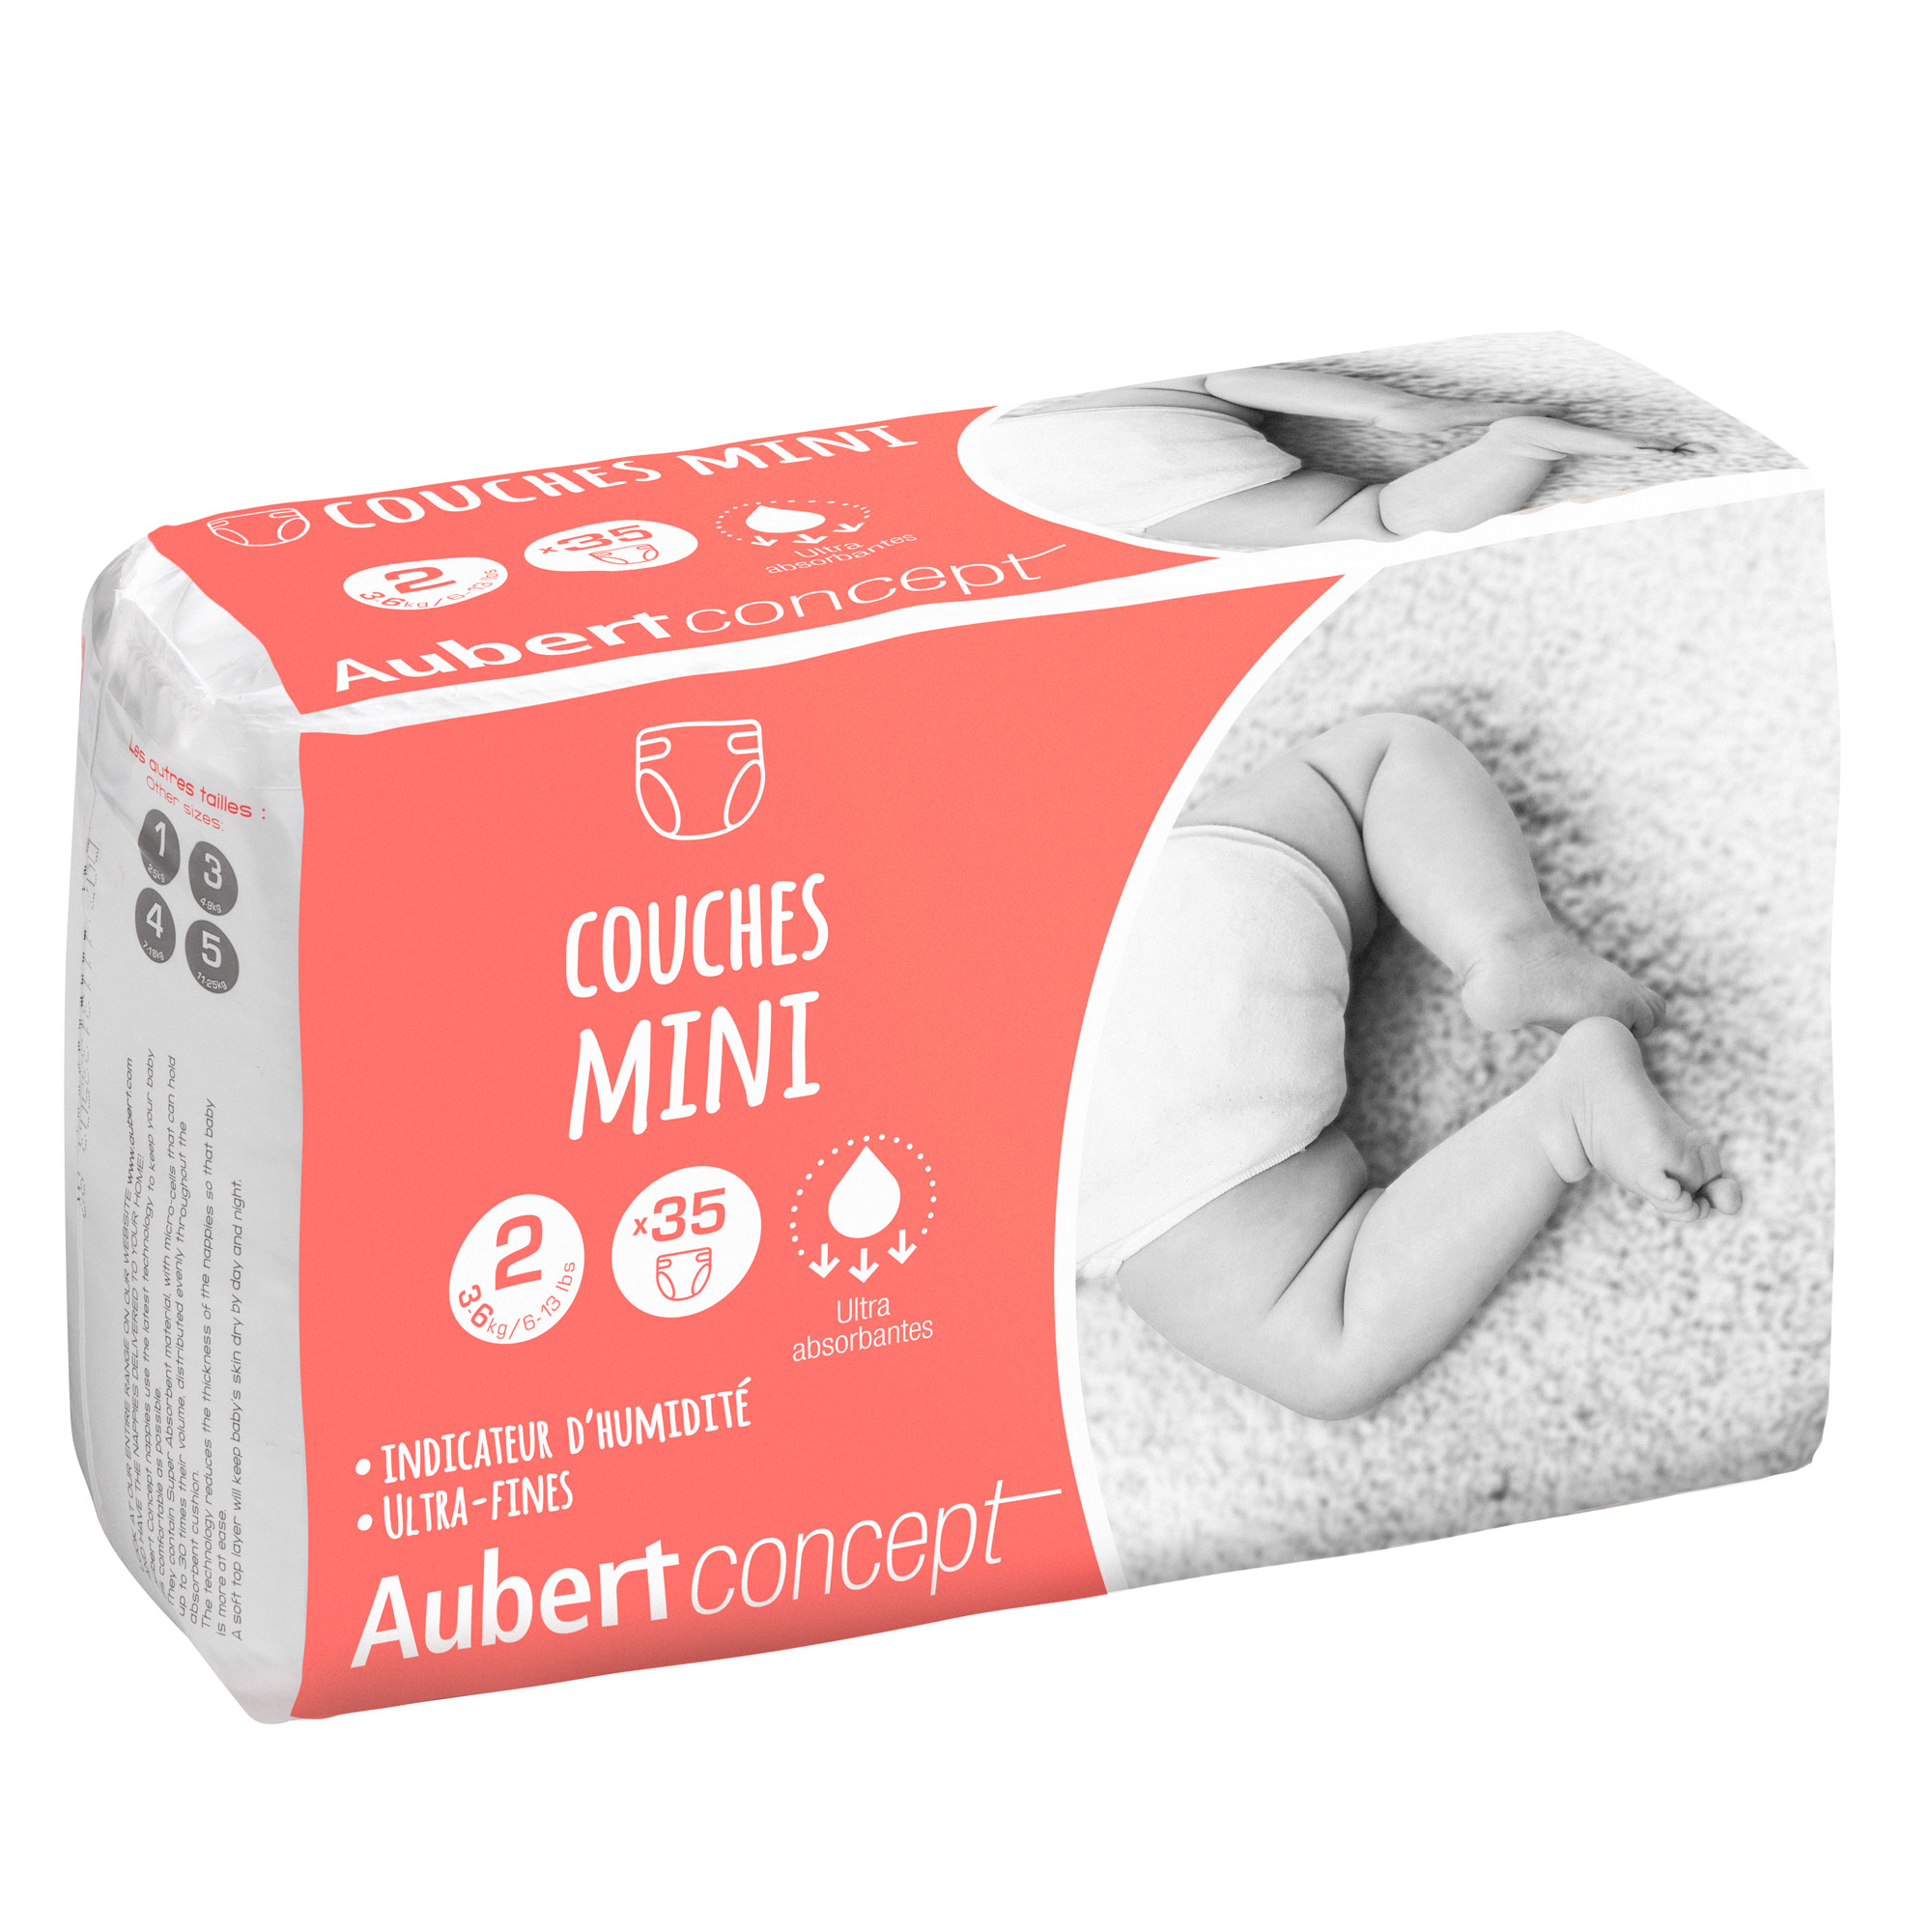 150 sacs à couches parfumés de Aubert concept, Couches : Aubert